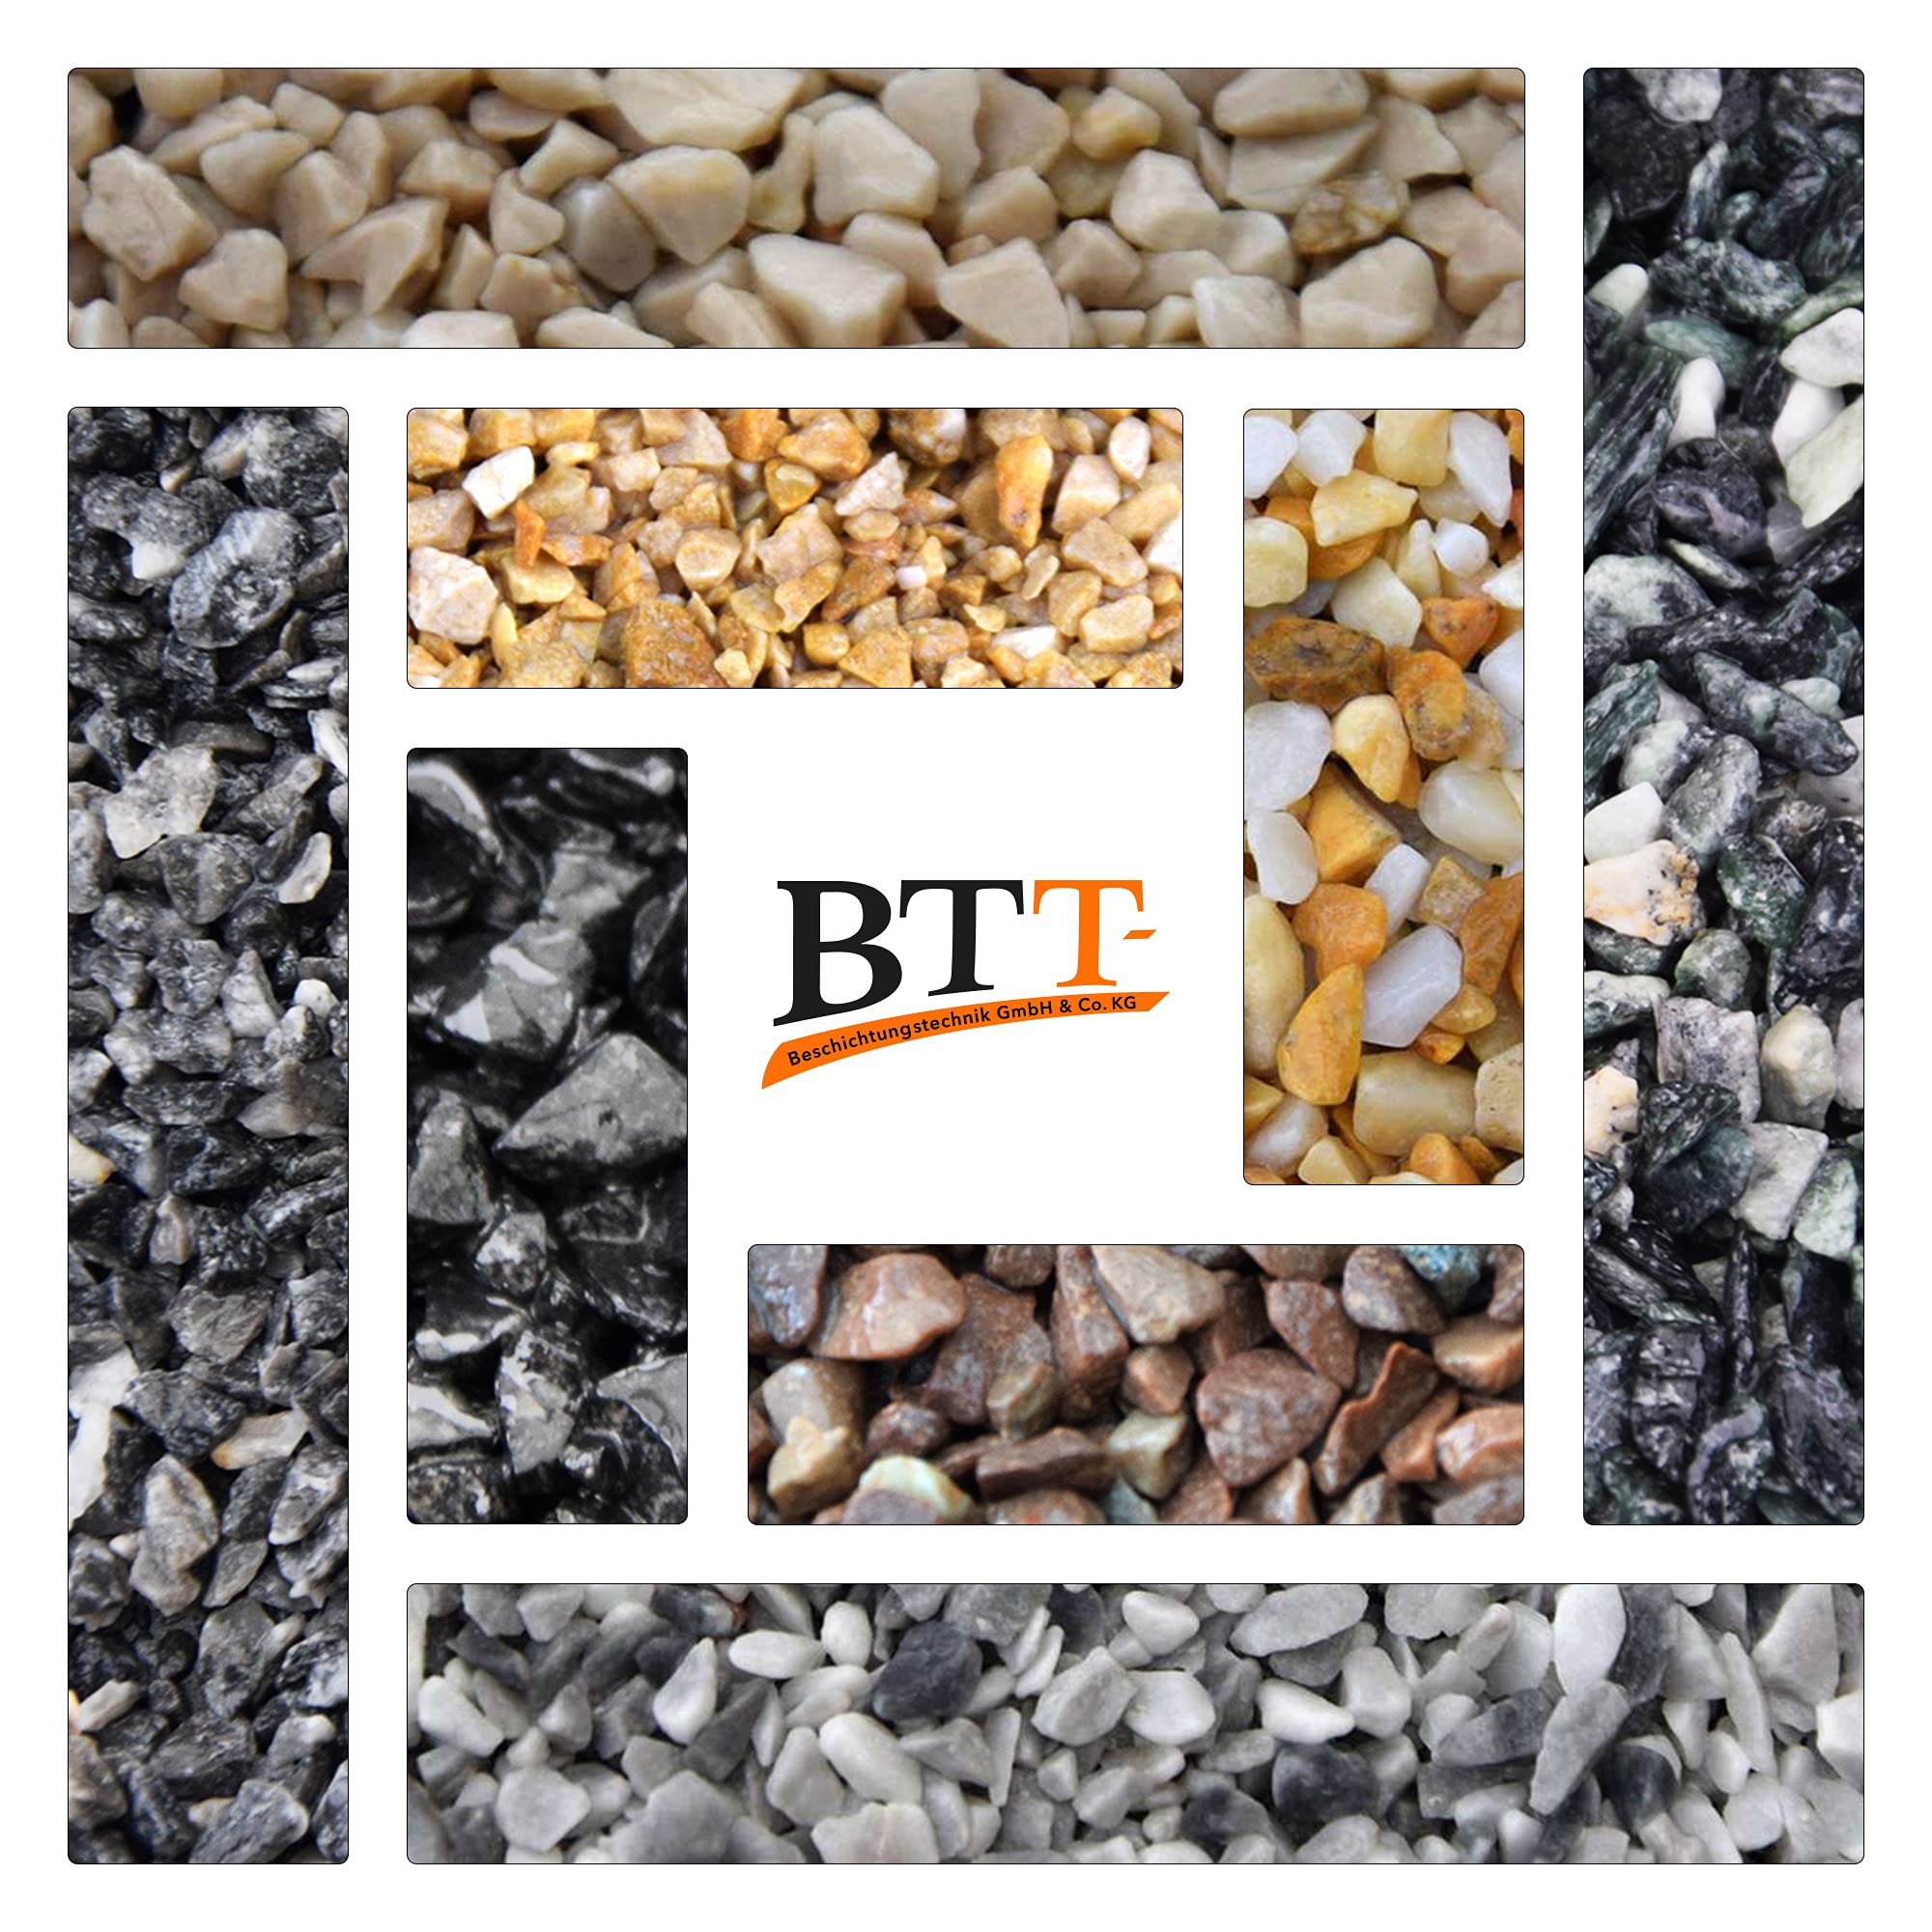 BTT-ST Steinteppich aus Marmorkies Grigio Carnico und Epoxidharz Bindemittel für 2,4m² Marmorstein Marmorkiesel Steinboden Bodenbeschichtung